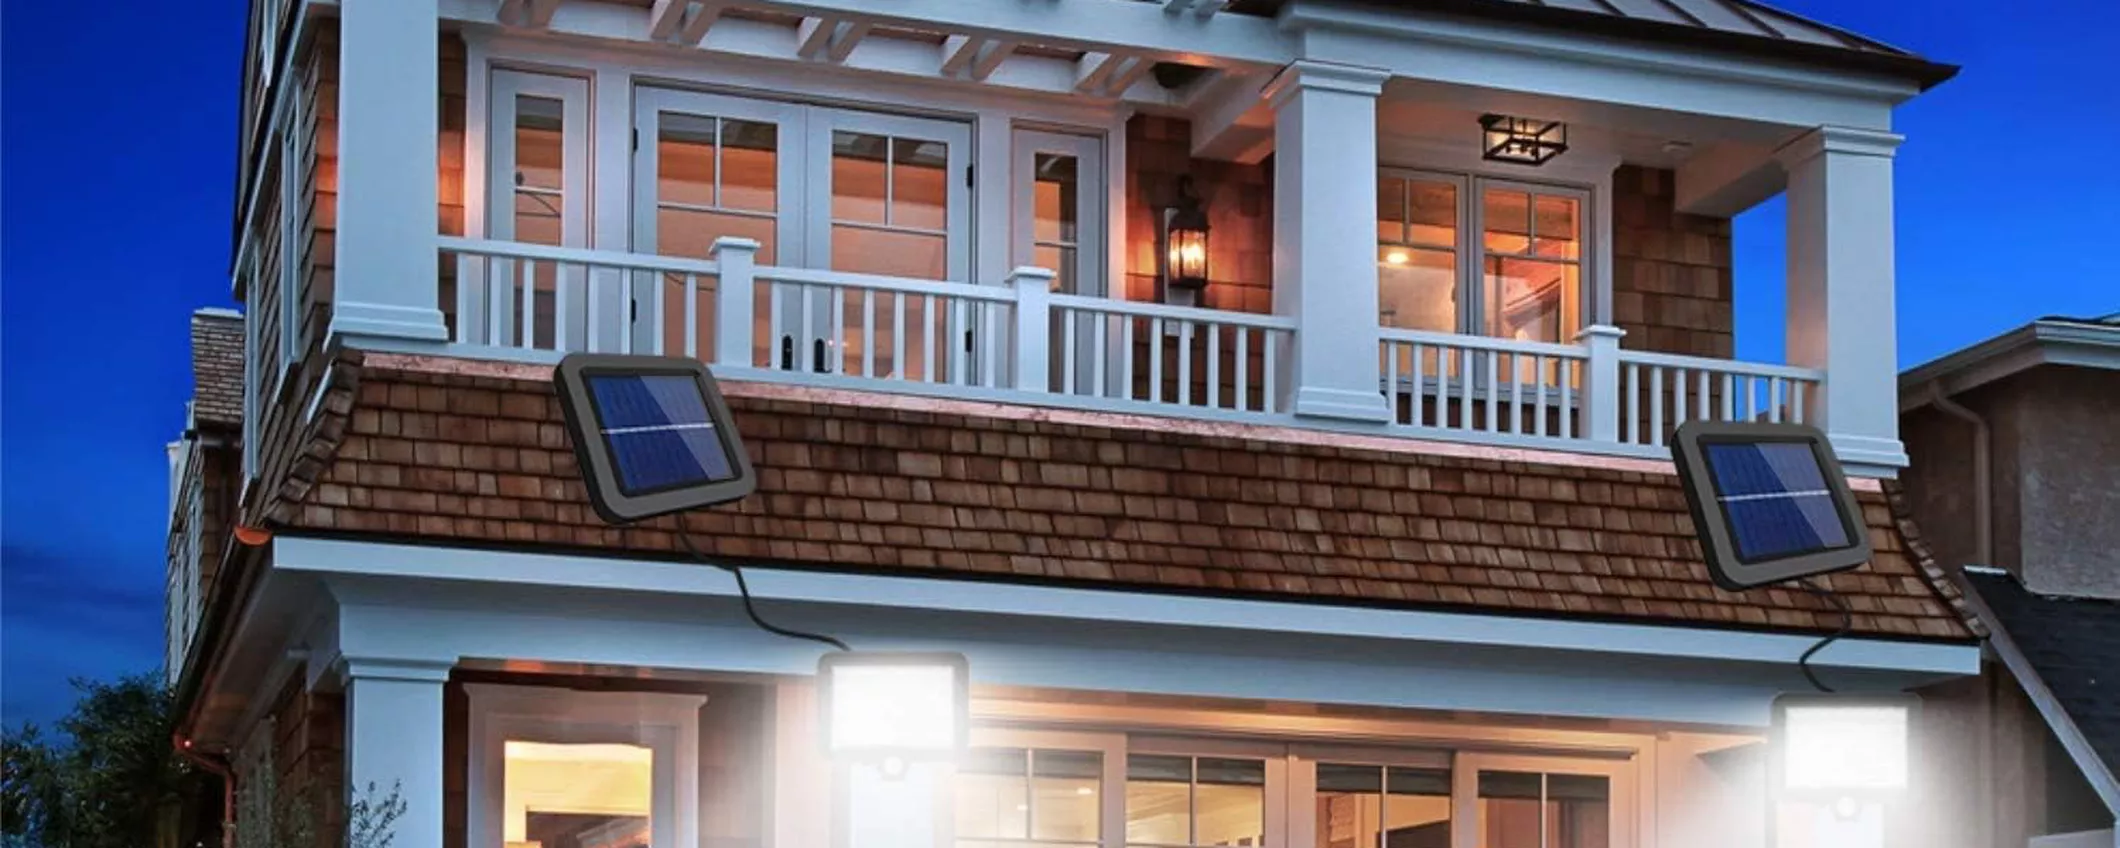 ILLUMINA GRATIS casa col SOLE con luce solare LED: col coupon costa solo 13€